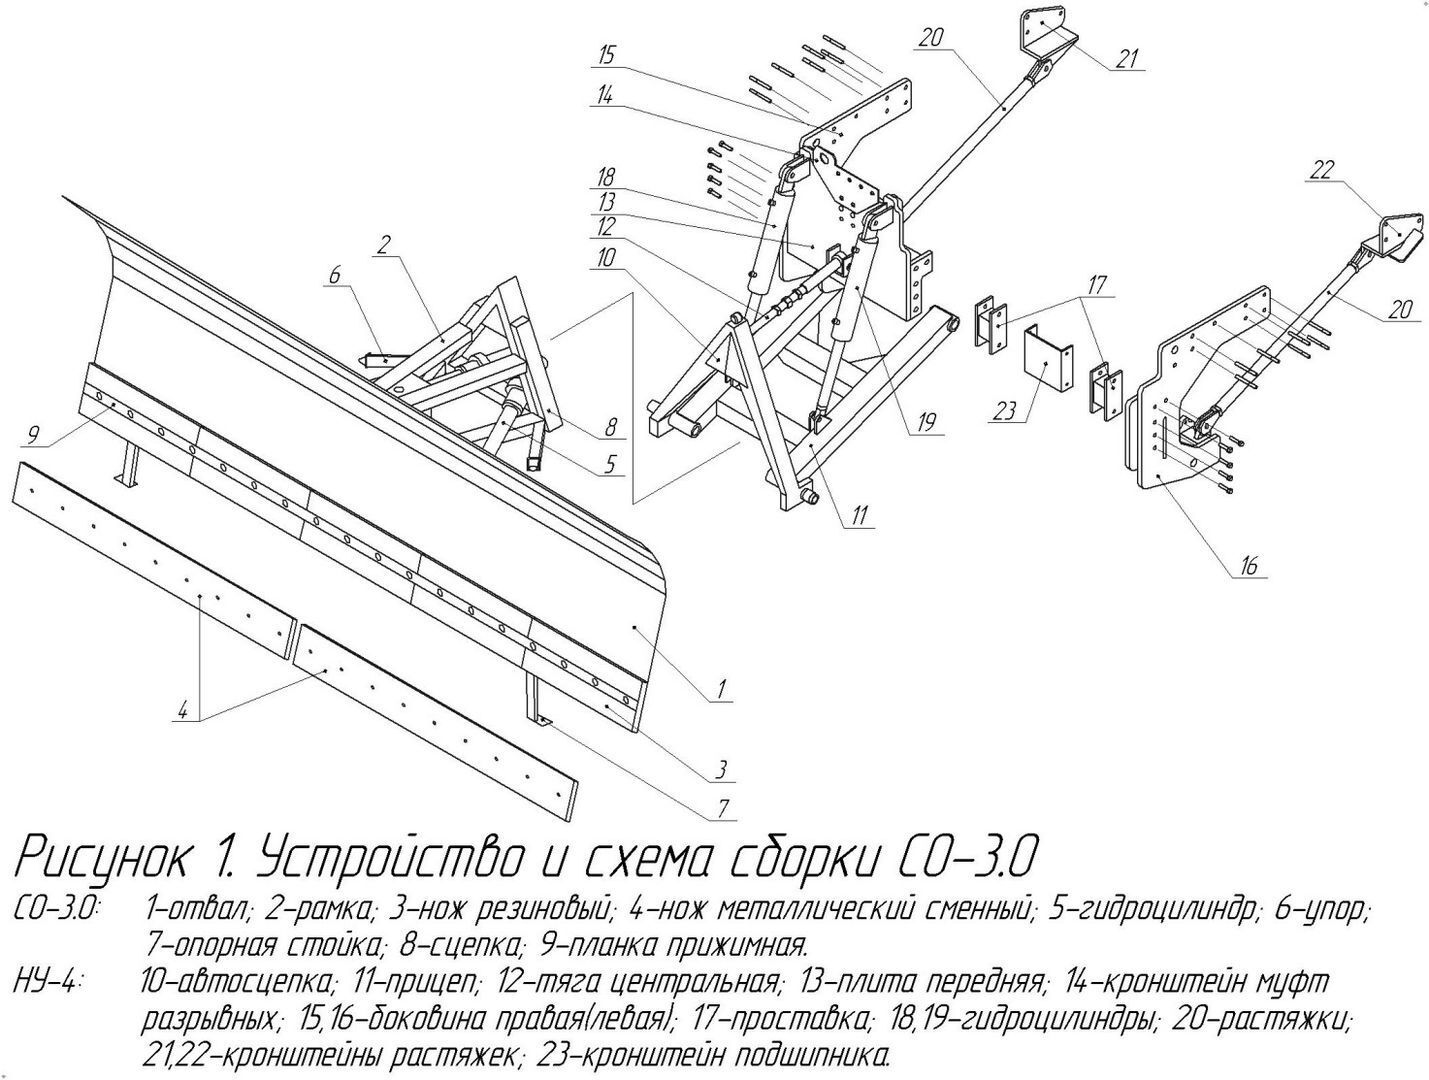 Купить Отвал для трактора гидроповоротный по доступной цене со склада в Москве.